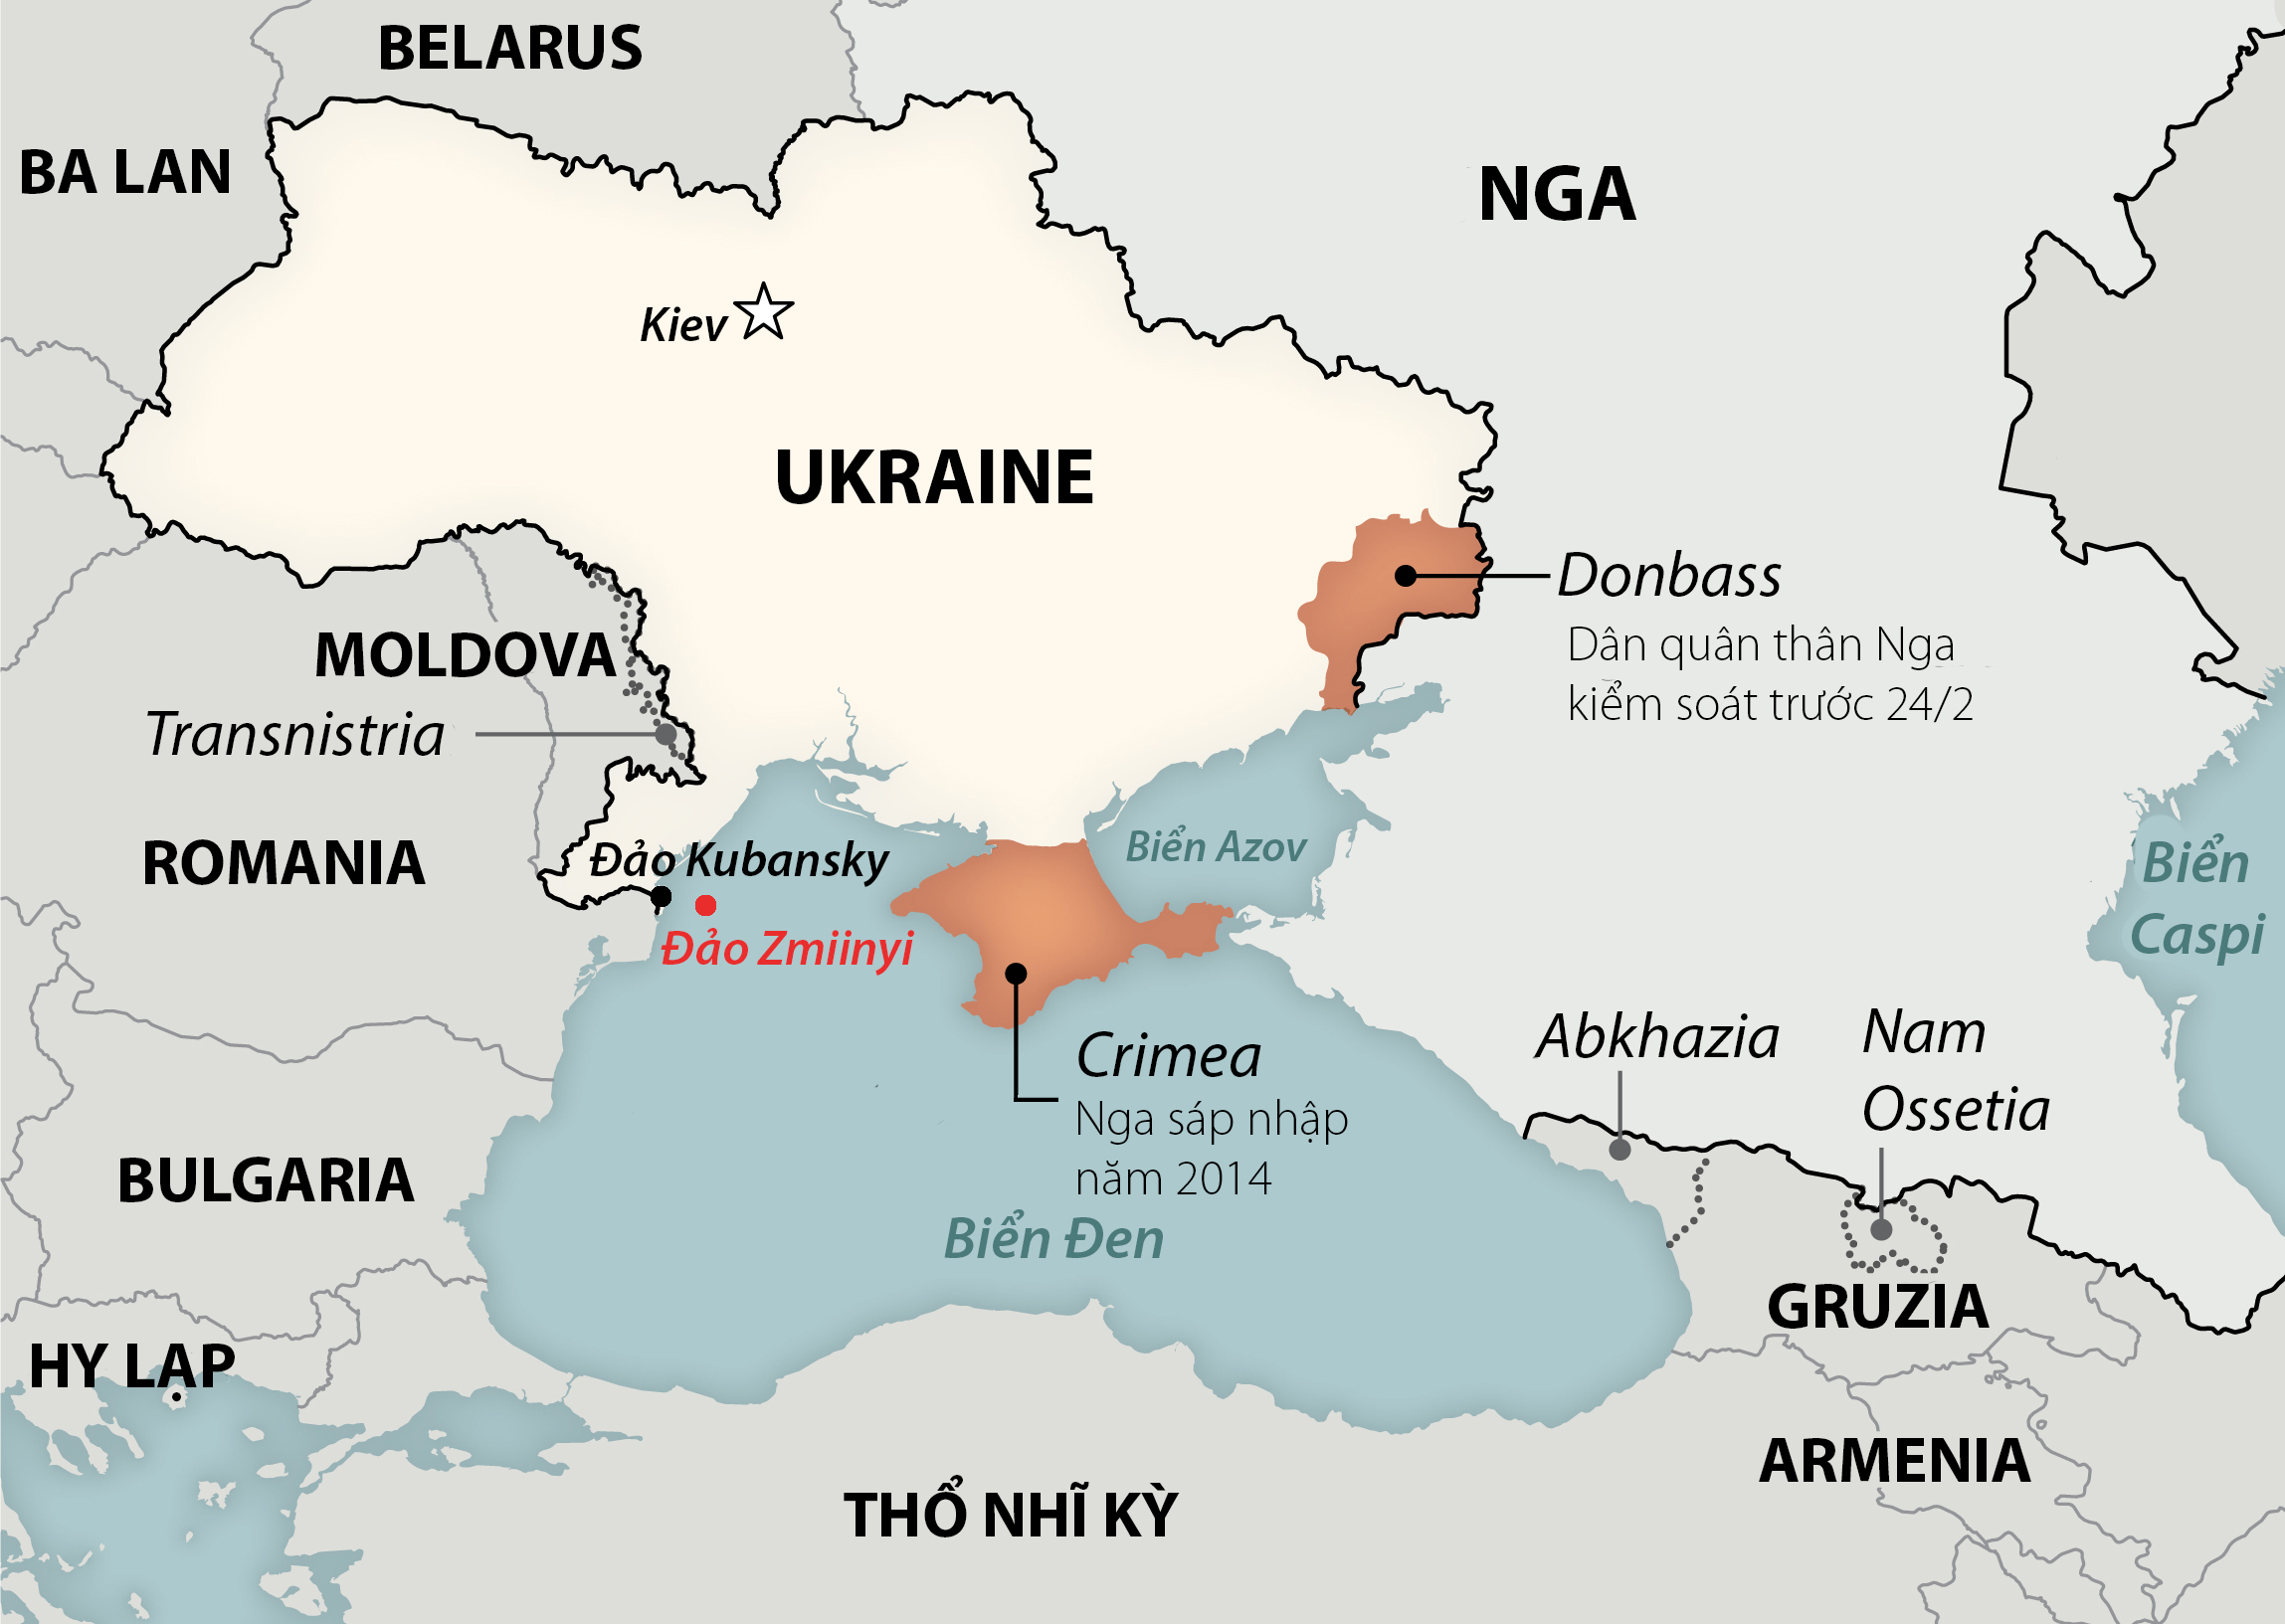 Vị trí đảo Kubansky và Zmiinyi. Đồ họa: Washington Post.